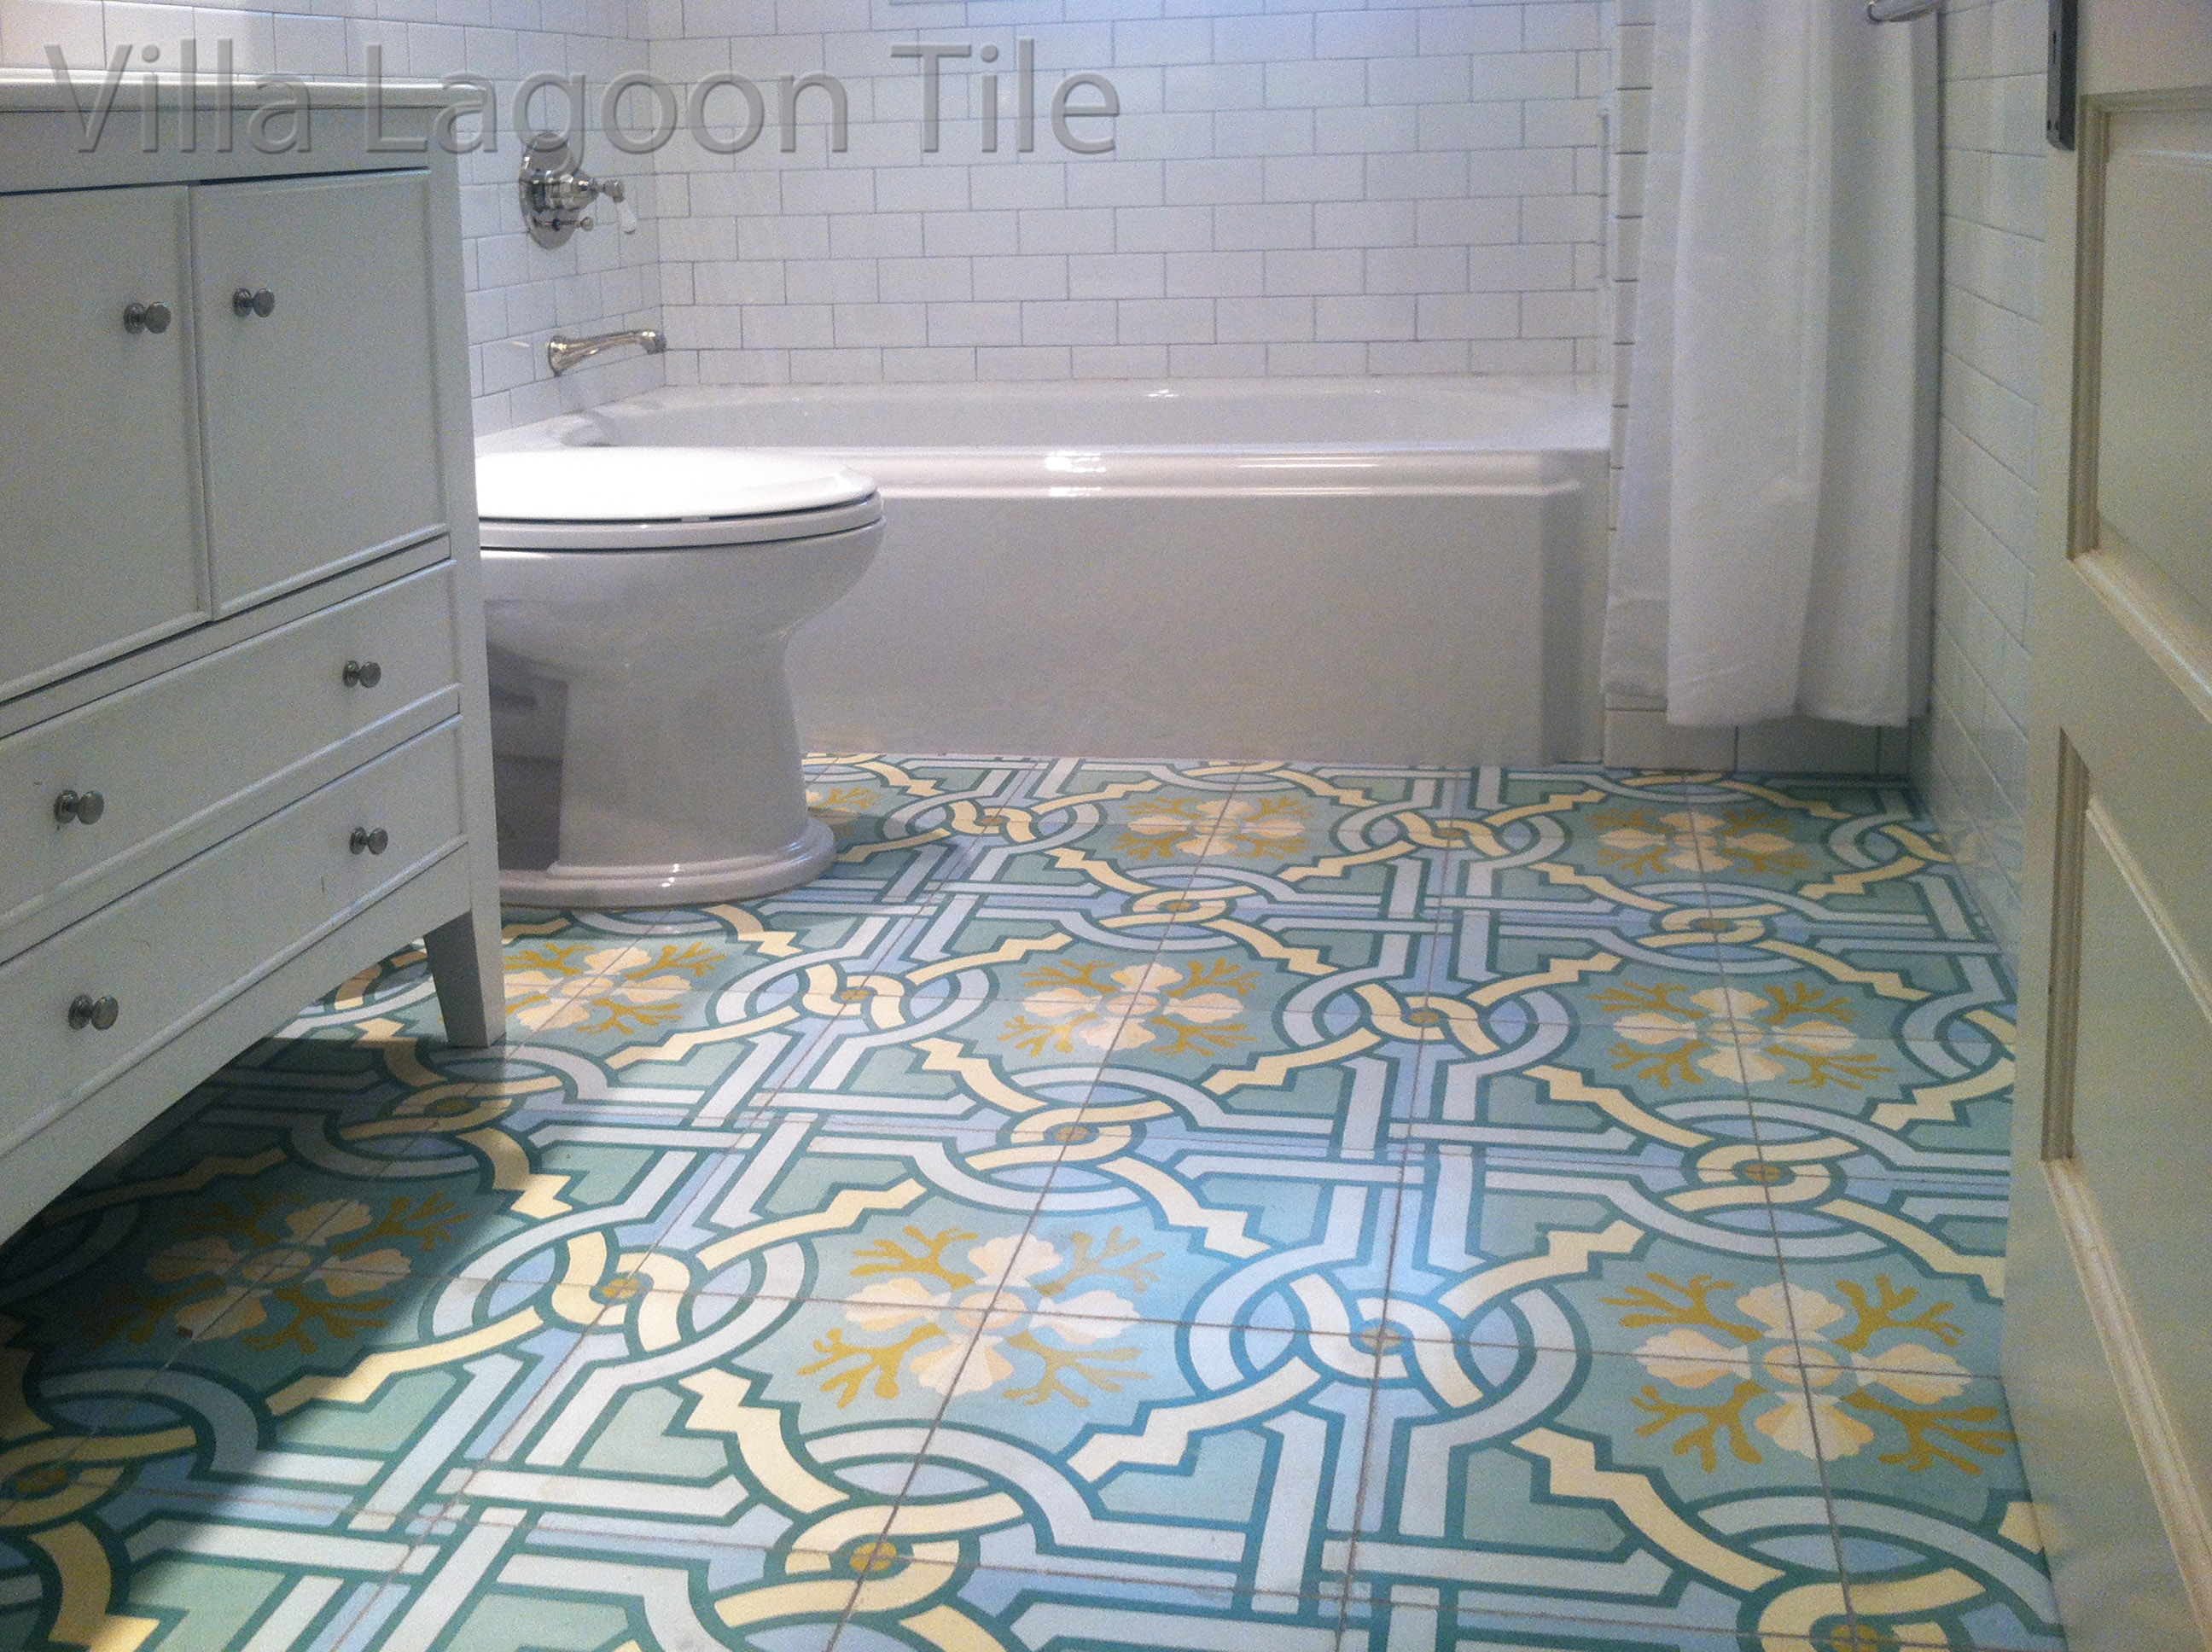 Villa Lagoon Tile's original "Venetian Azul" cement tile brings a white bathroom to life.